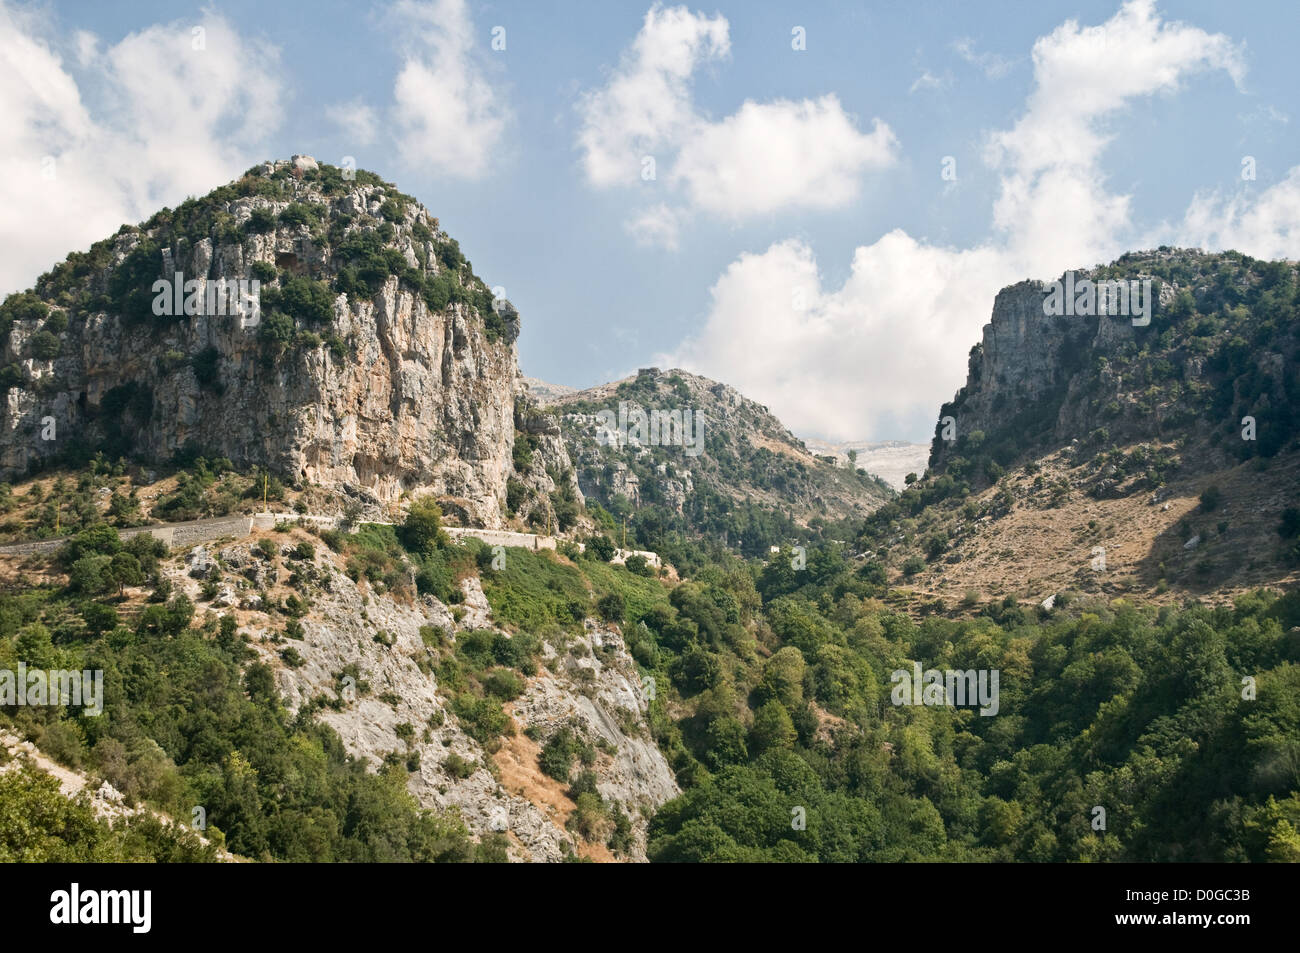 La regione montuosa di Wadi Tannourine nella parte settentrionale del Monte Libano, vicino alla città di Batroun, Libano. Foto Stock